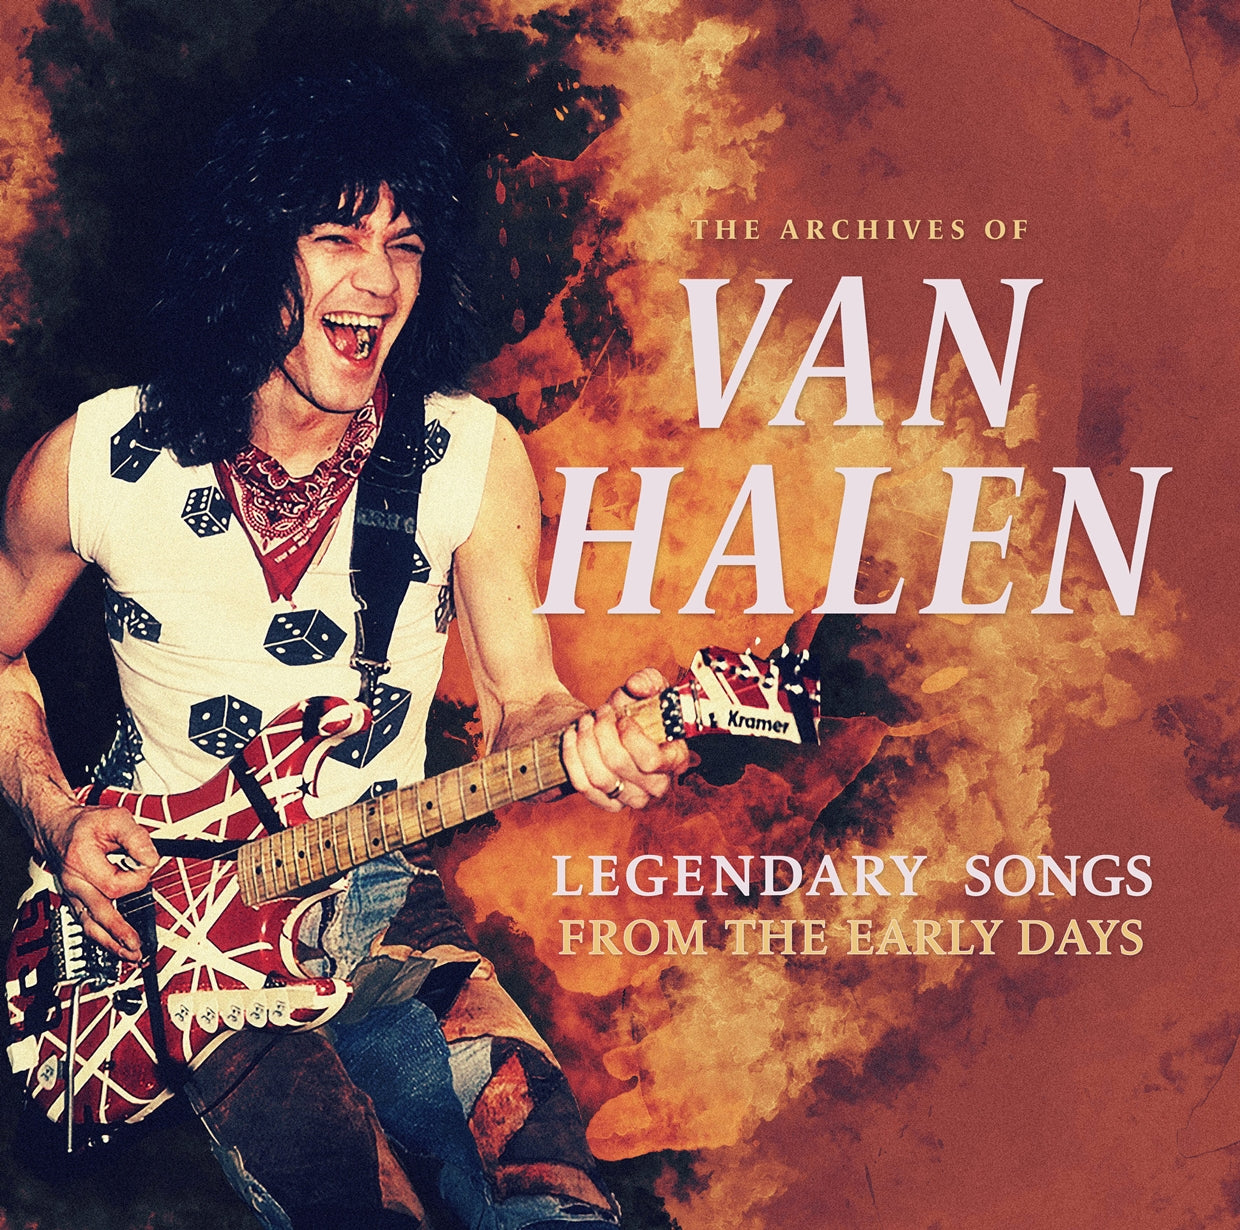 Van Halen - Archives Of Van Halen, The: Legendary Songs From The Early Days - Vinyl - New